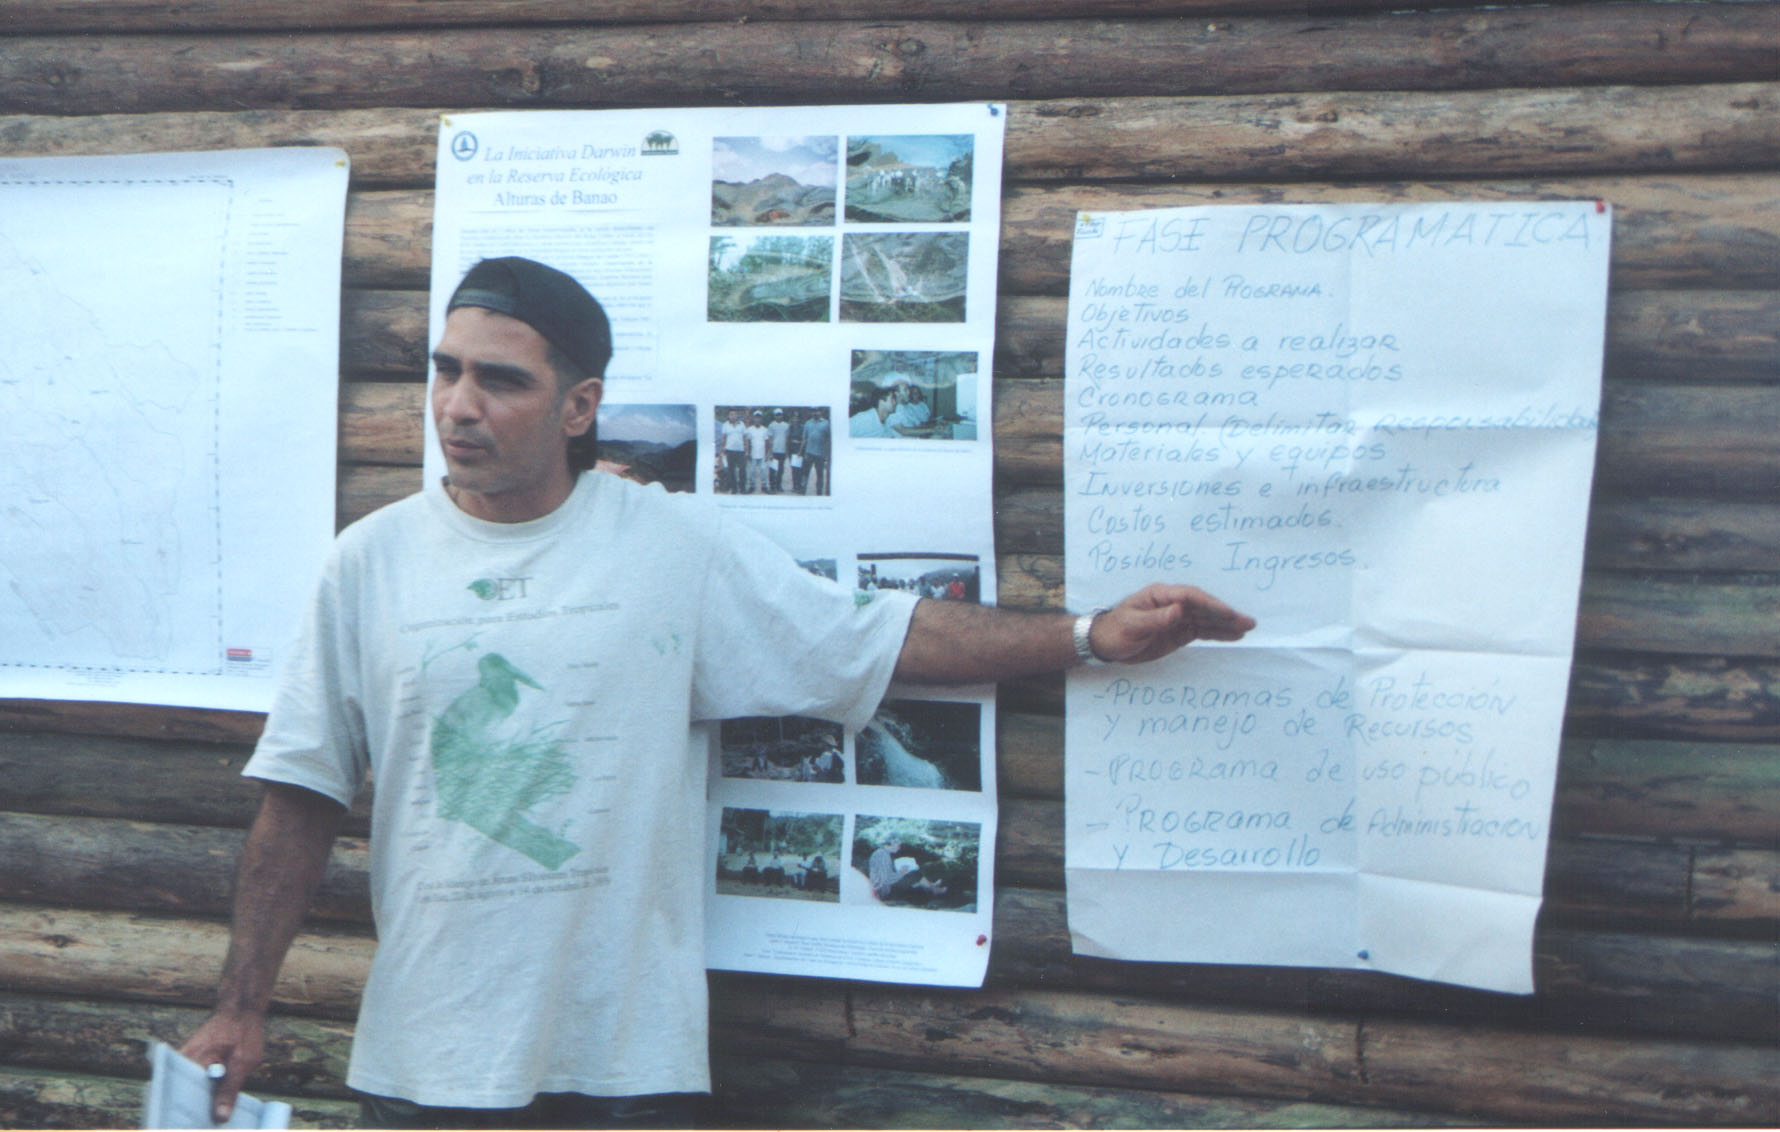 José-Manuel Rodríguez Vásquez leads a workshop in the then unfinished new Darwin Building at Alturas de Banao